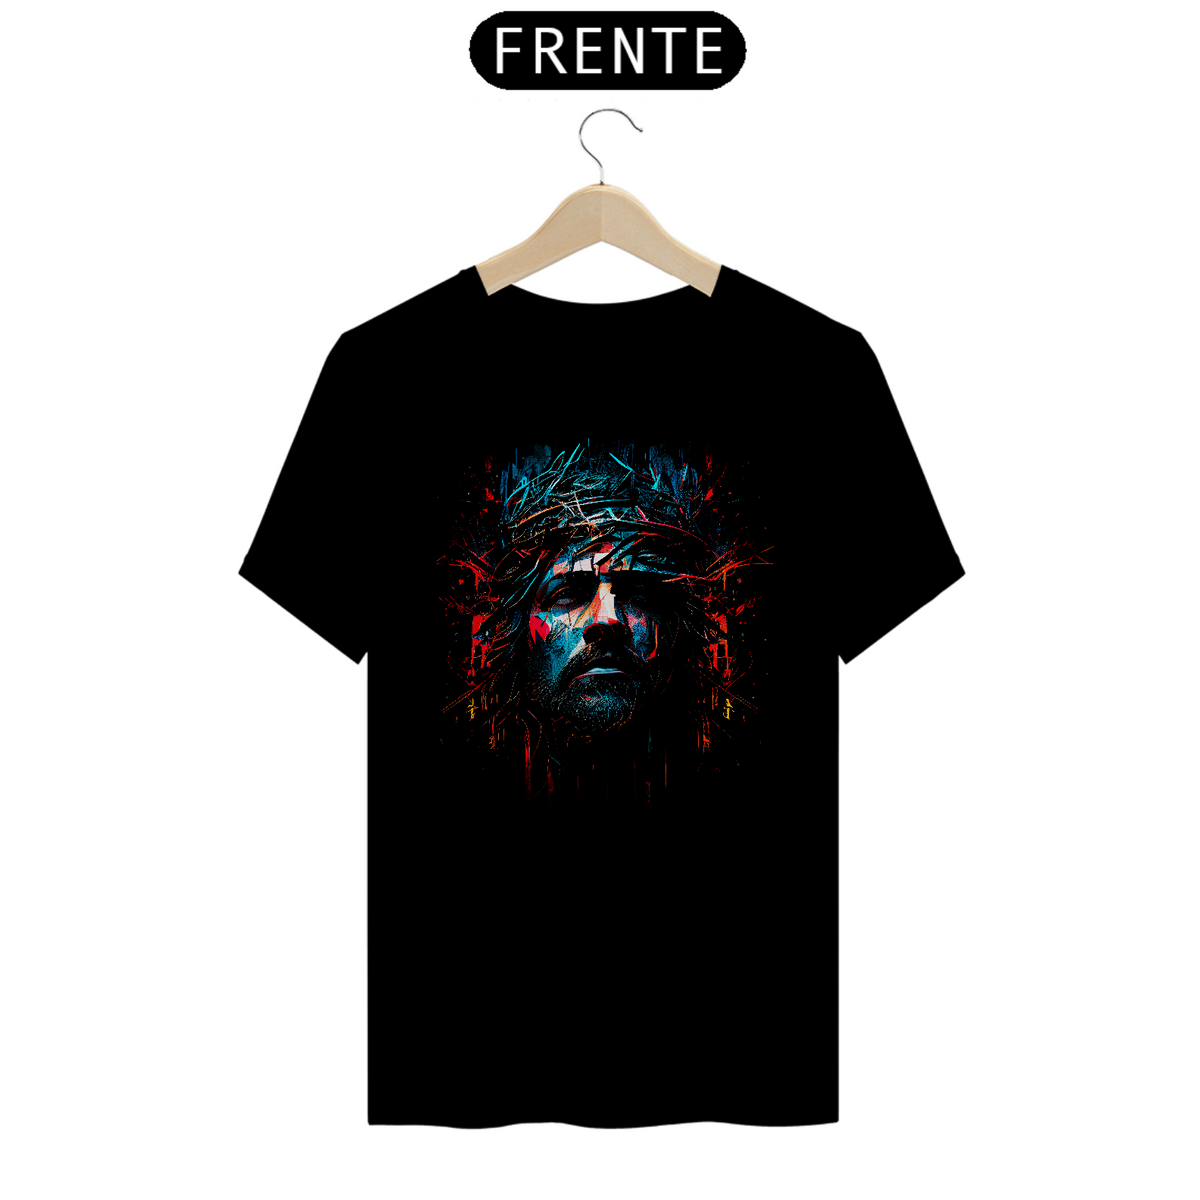 Nome do produto: Camisa - Jesus Cristo - Camiseta - Unisex - Premium (Cor Preta)